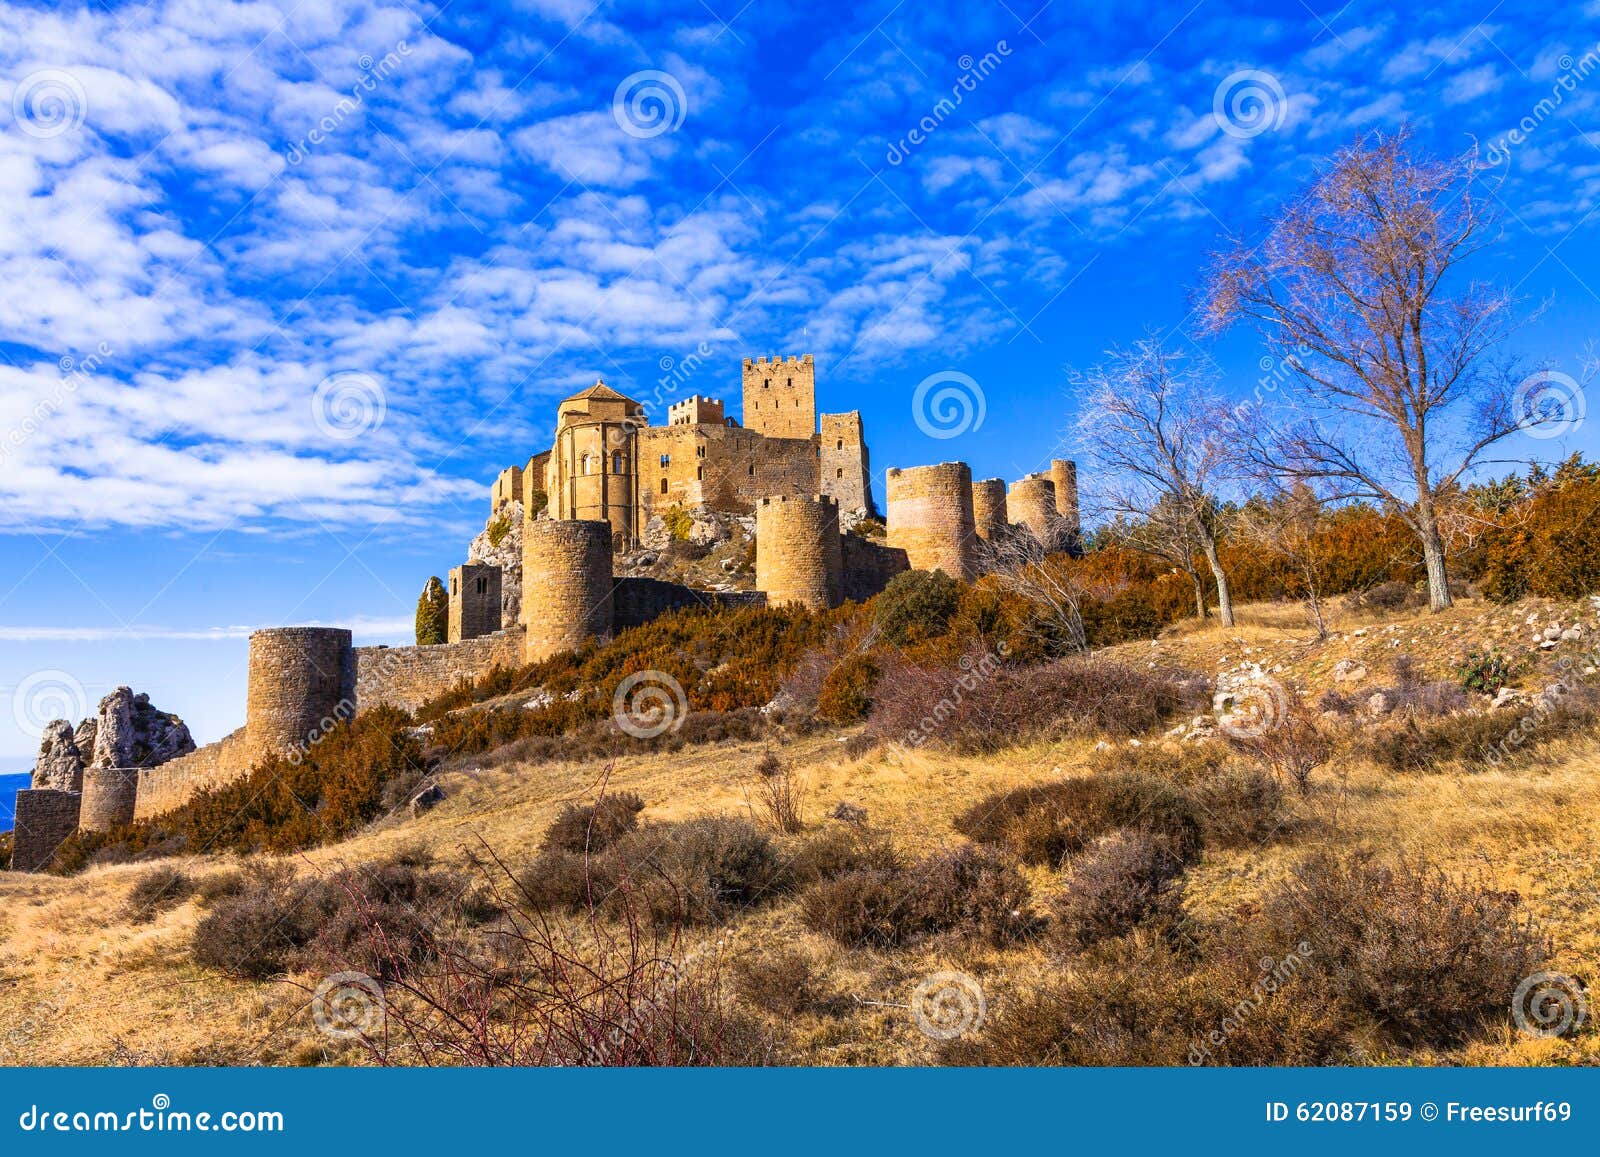 castles of spain - loare in aragon